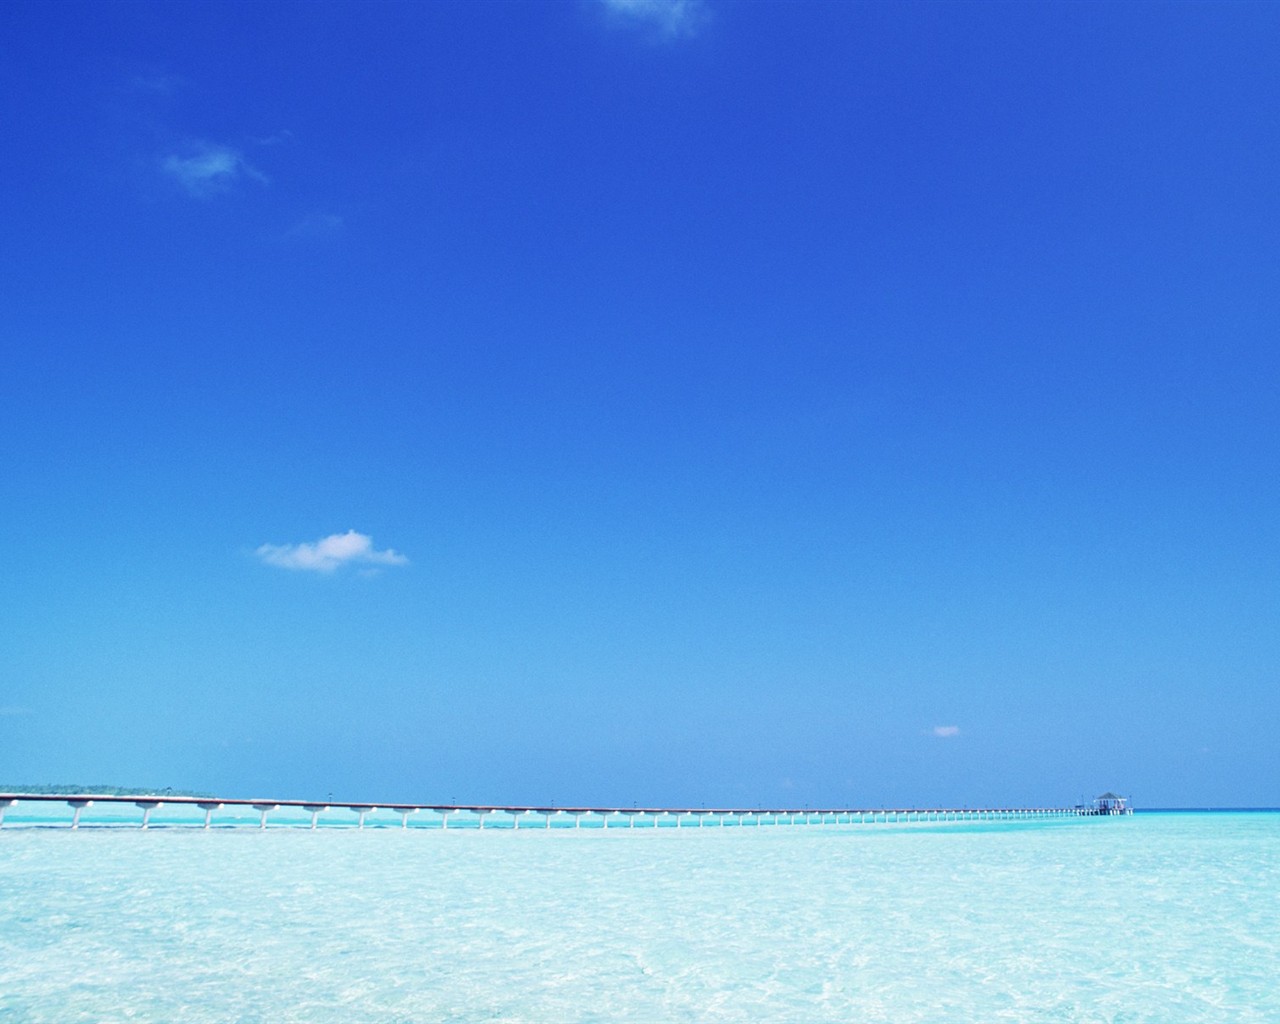 Maledivy vody a modrou oblohu #22 - 1280x1024